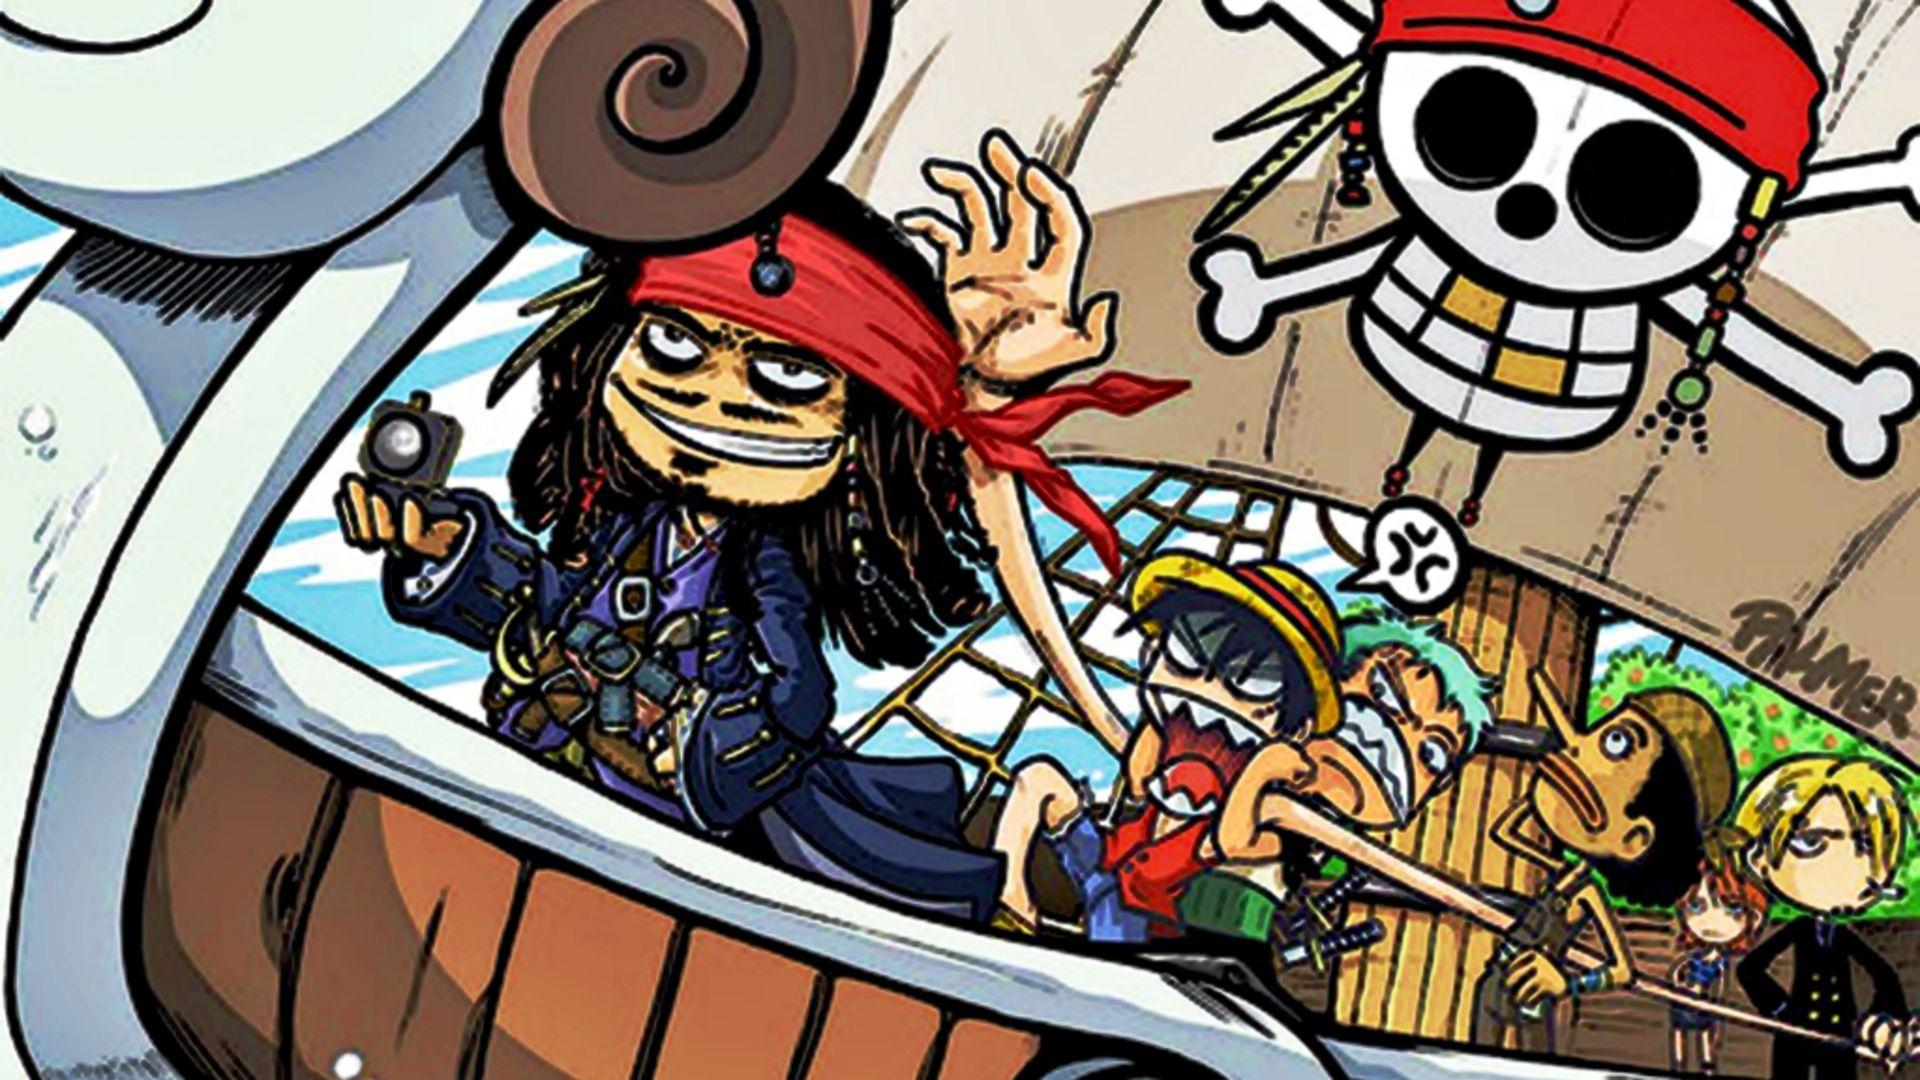 cartoons, funny, Roronoa Zoro, Pirates of the Caribbean, artwork